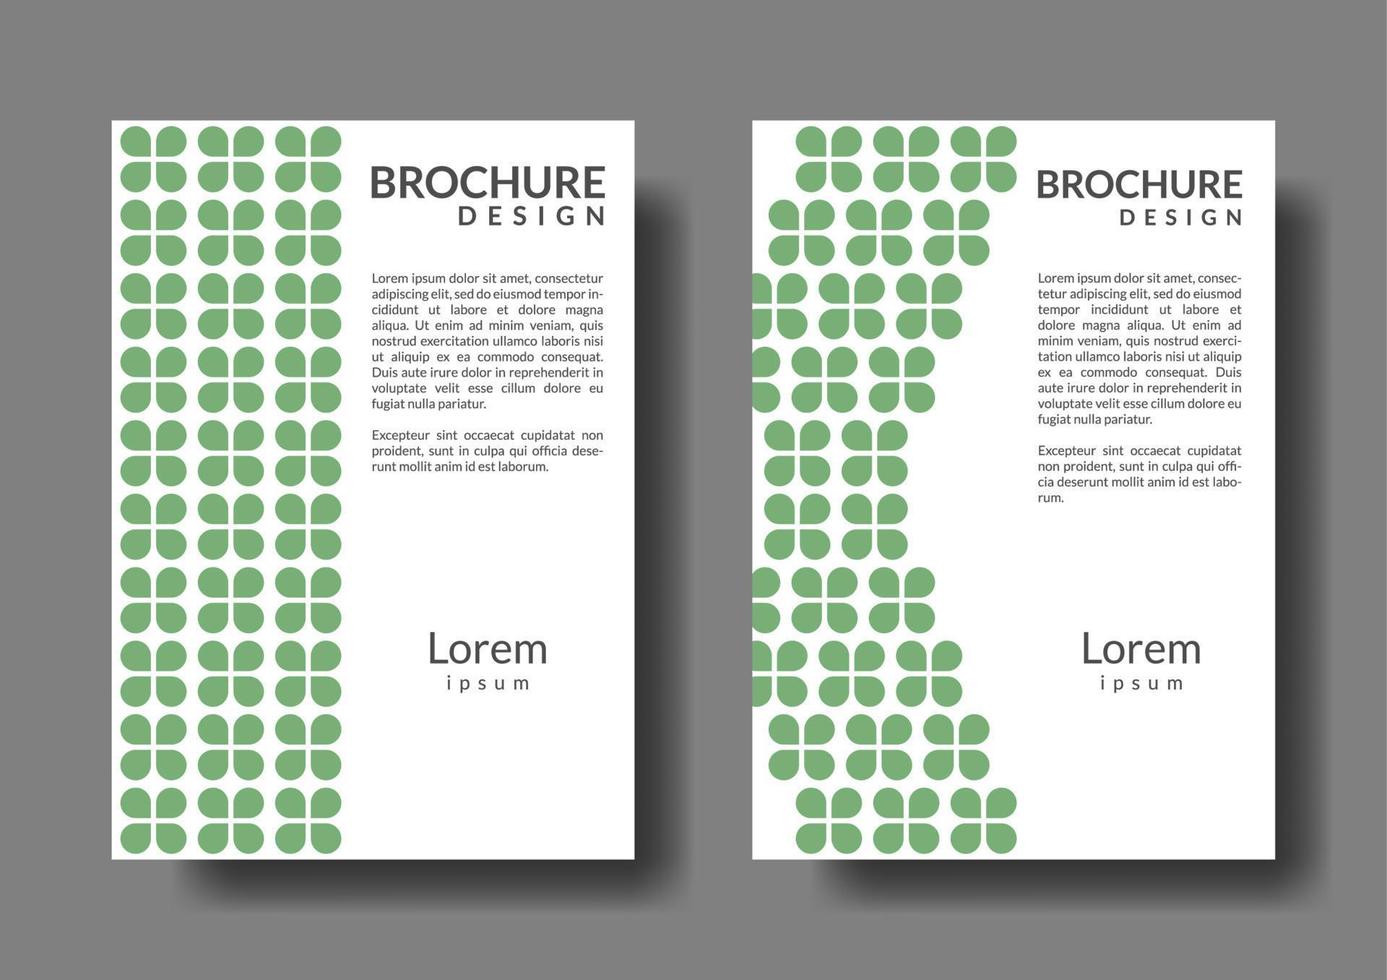 bladvorm zakelijke brochure sjabloon. voor promotie en reclame vector